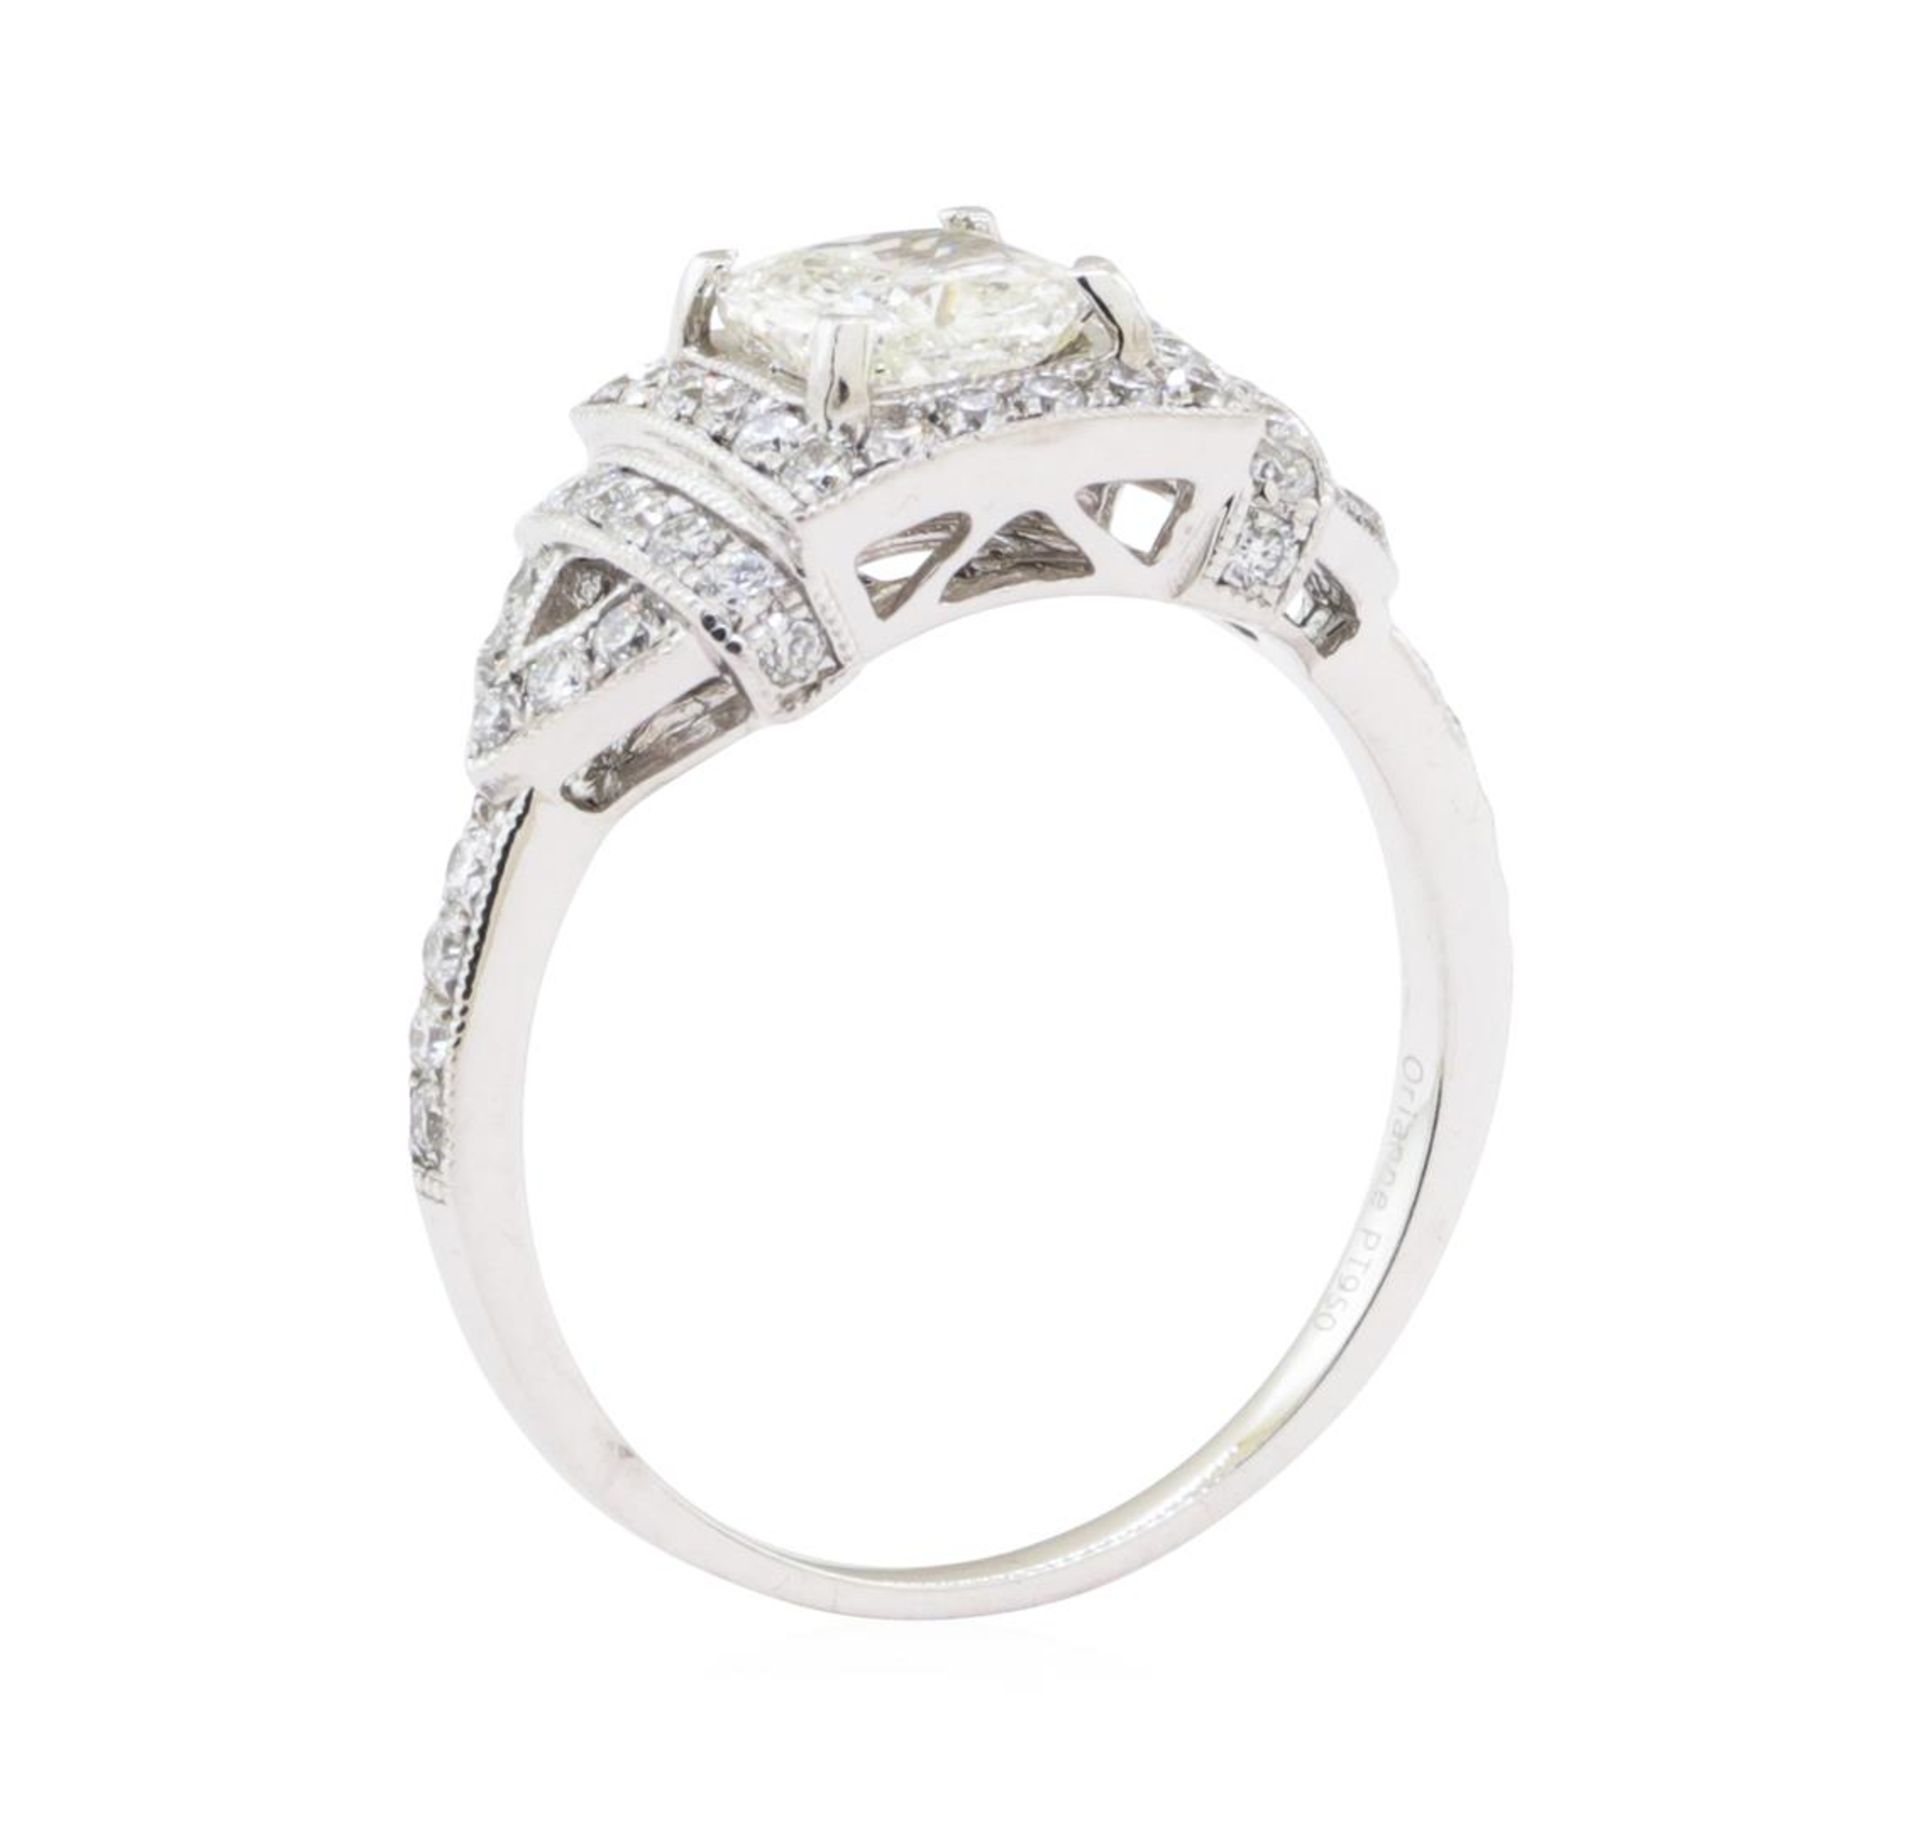 1.51ctw Diamond Ring - Platinum - Image 4 of 4